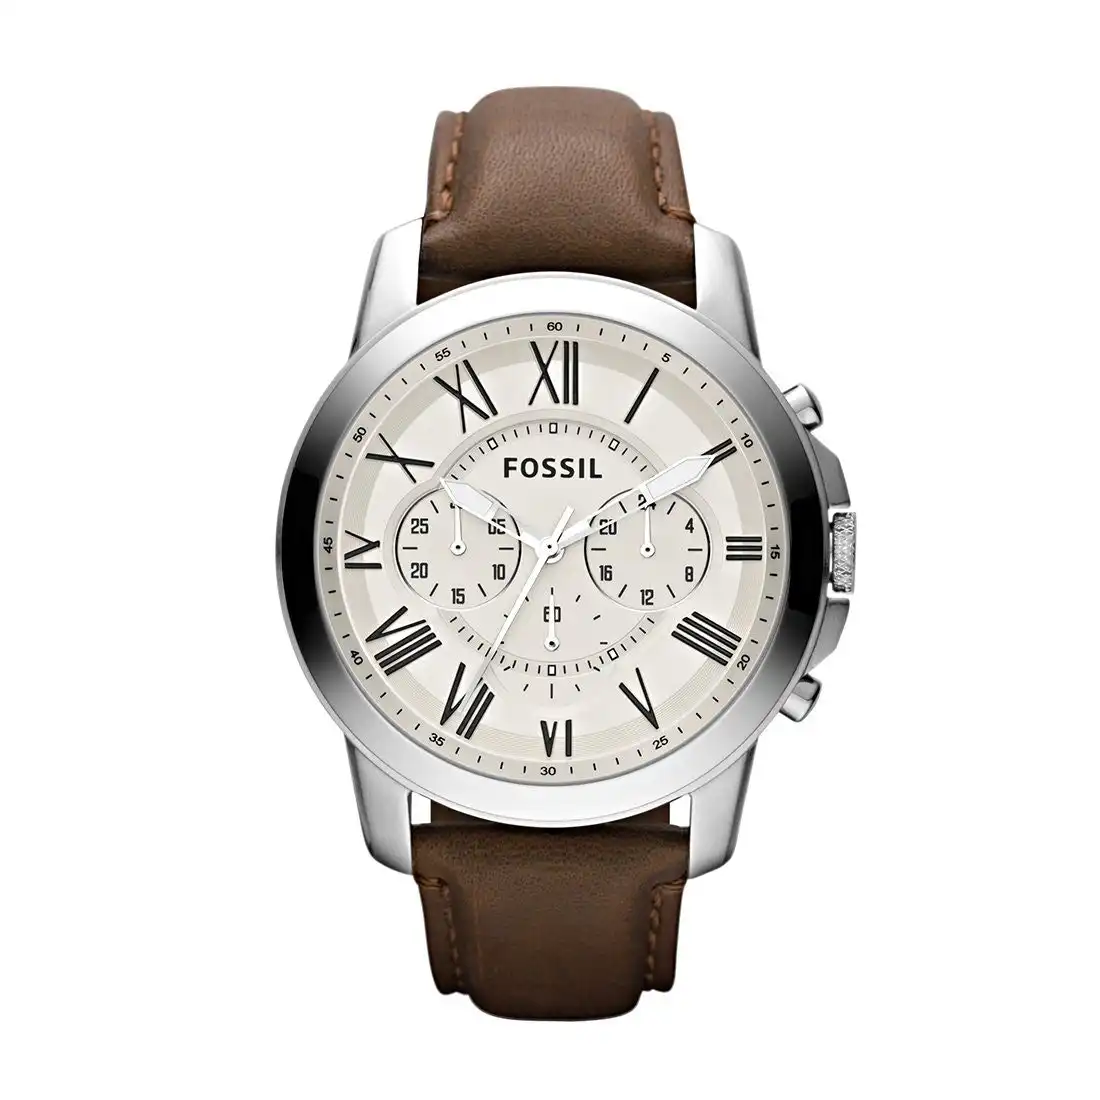 Fossil Men's Leather Watch Model - FS4735